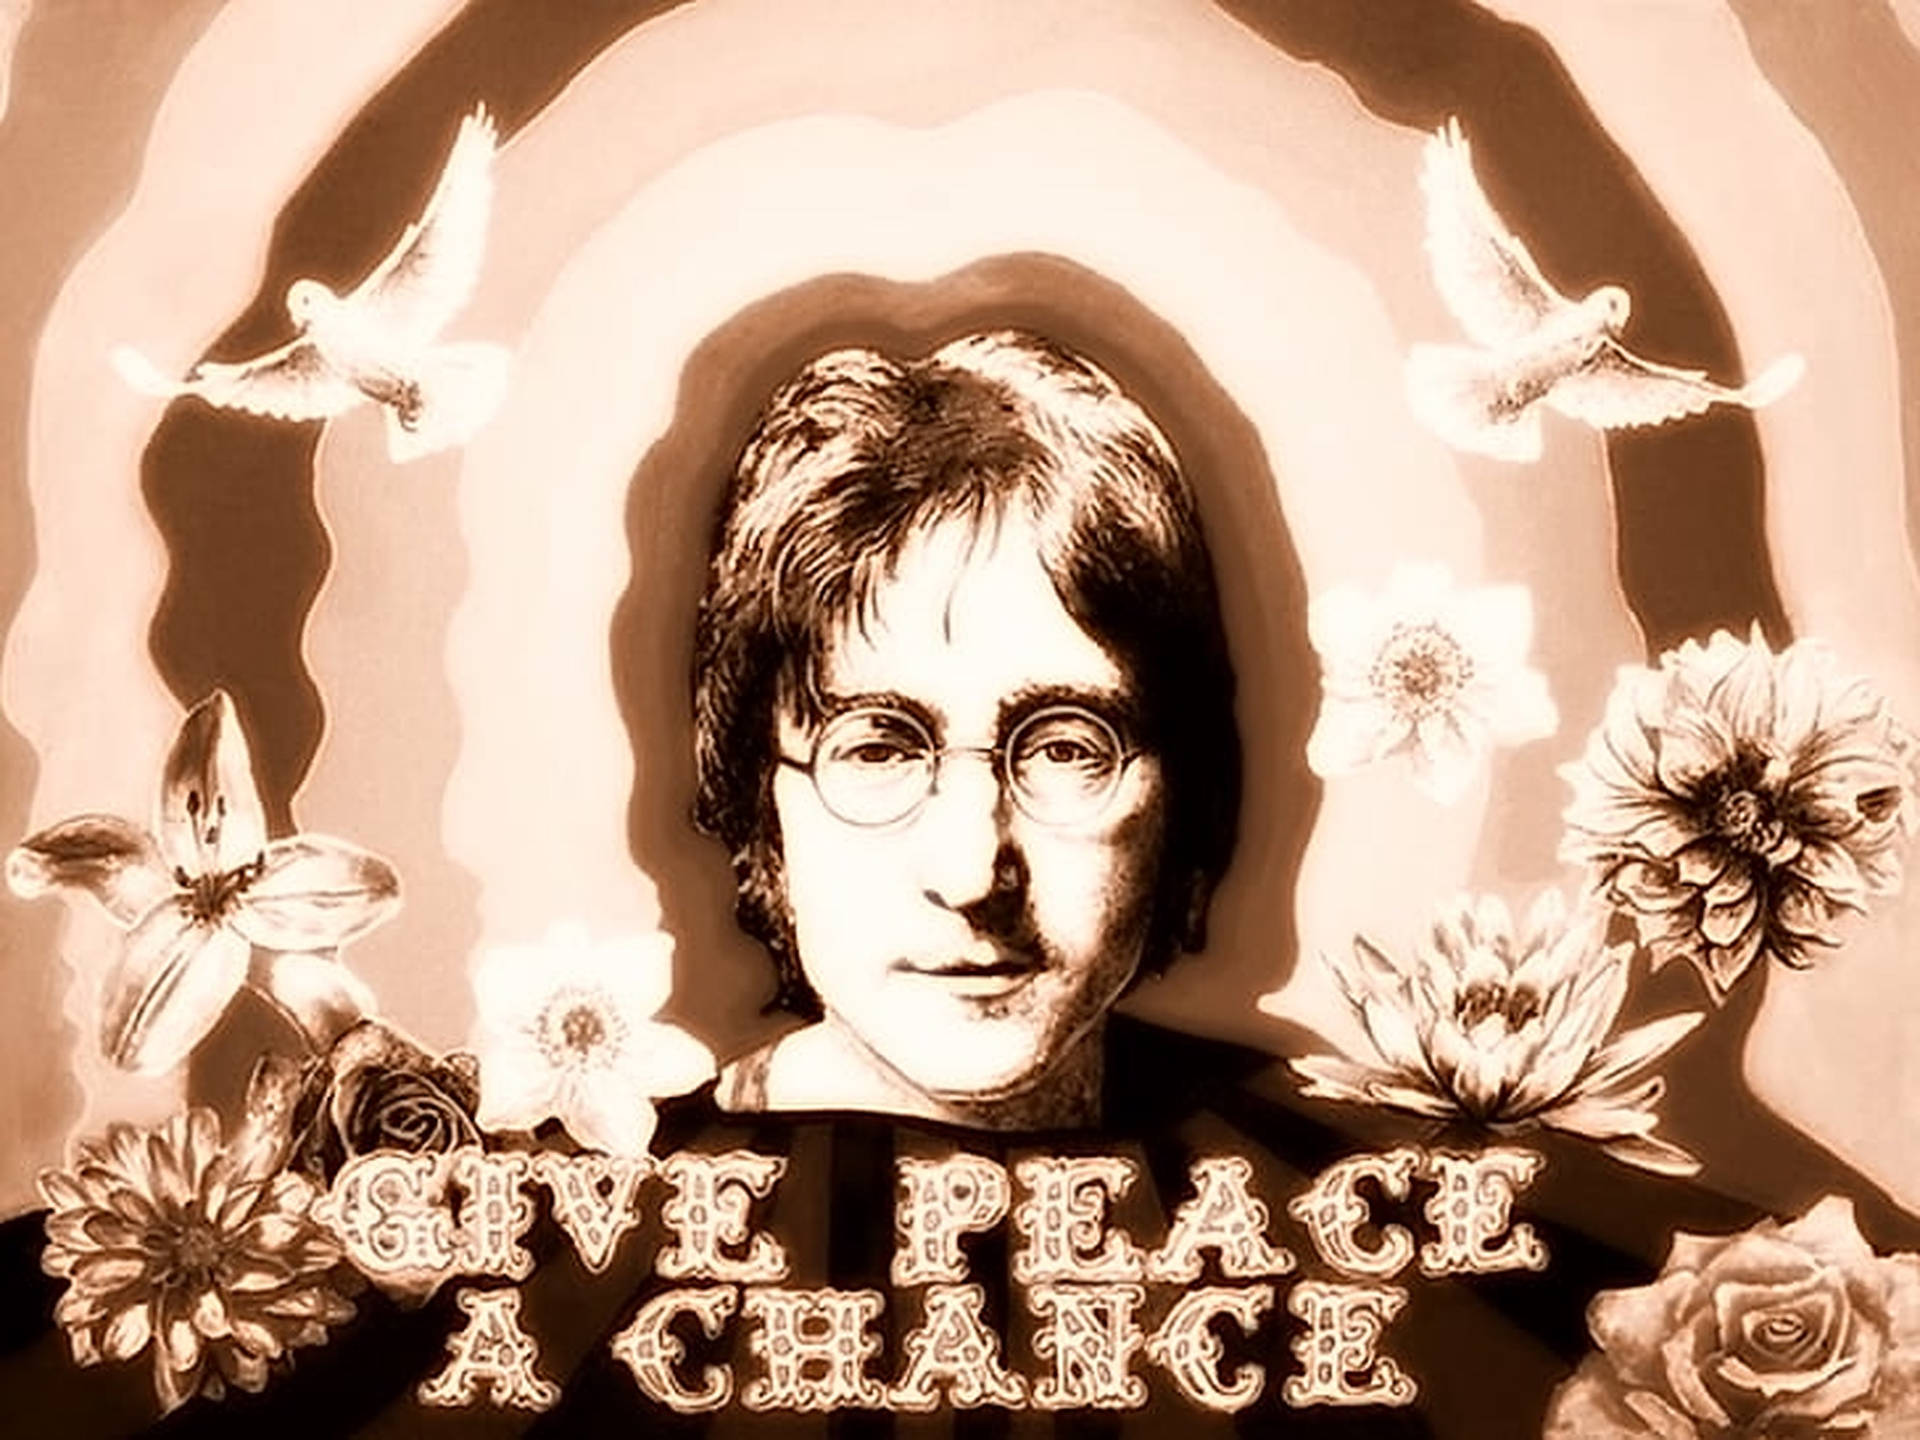 John Lennon Sepia Effect Art Wallpaper